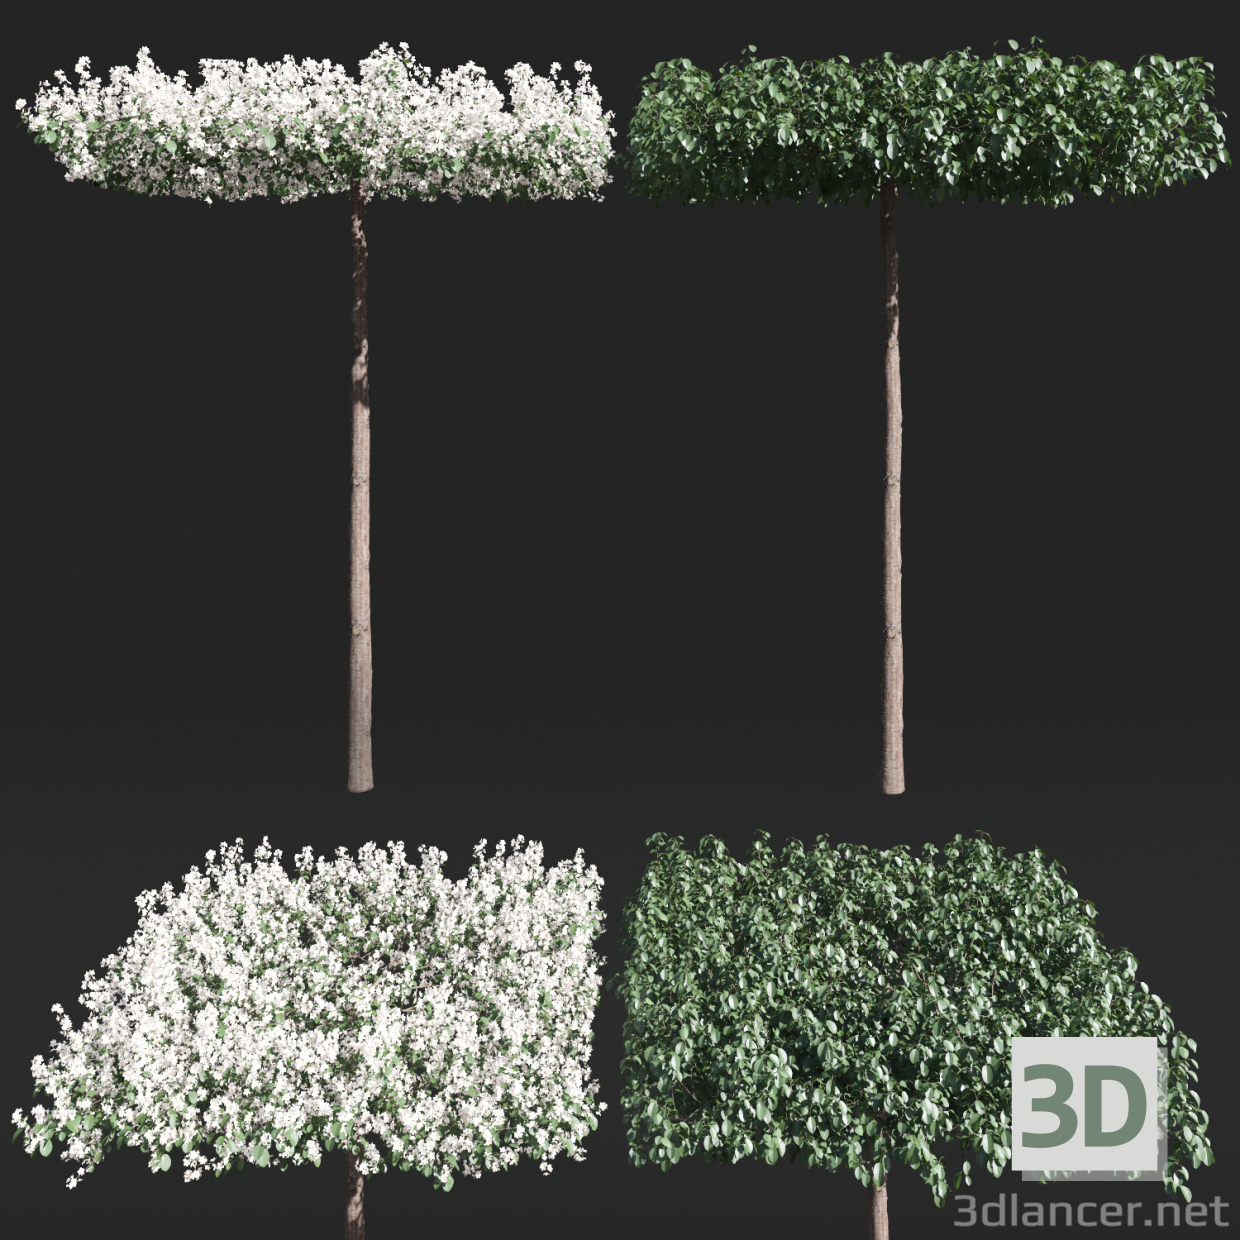 Apfelbaum auf der Stammform "Dach" 3D-Modell kaufen - Rendern